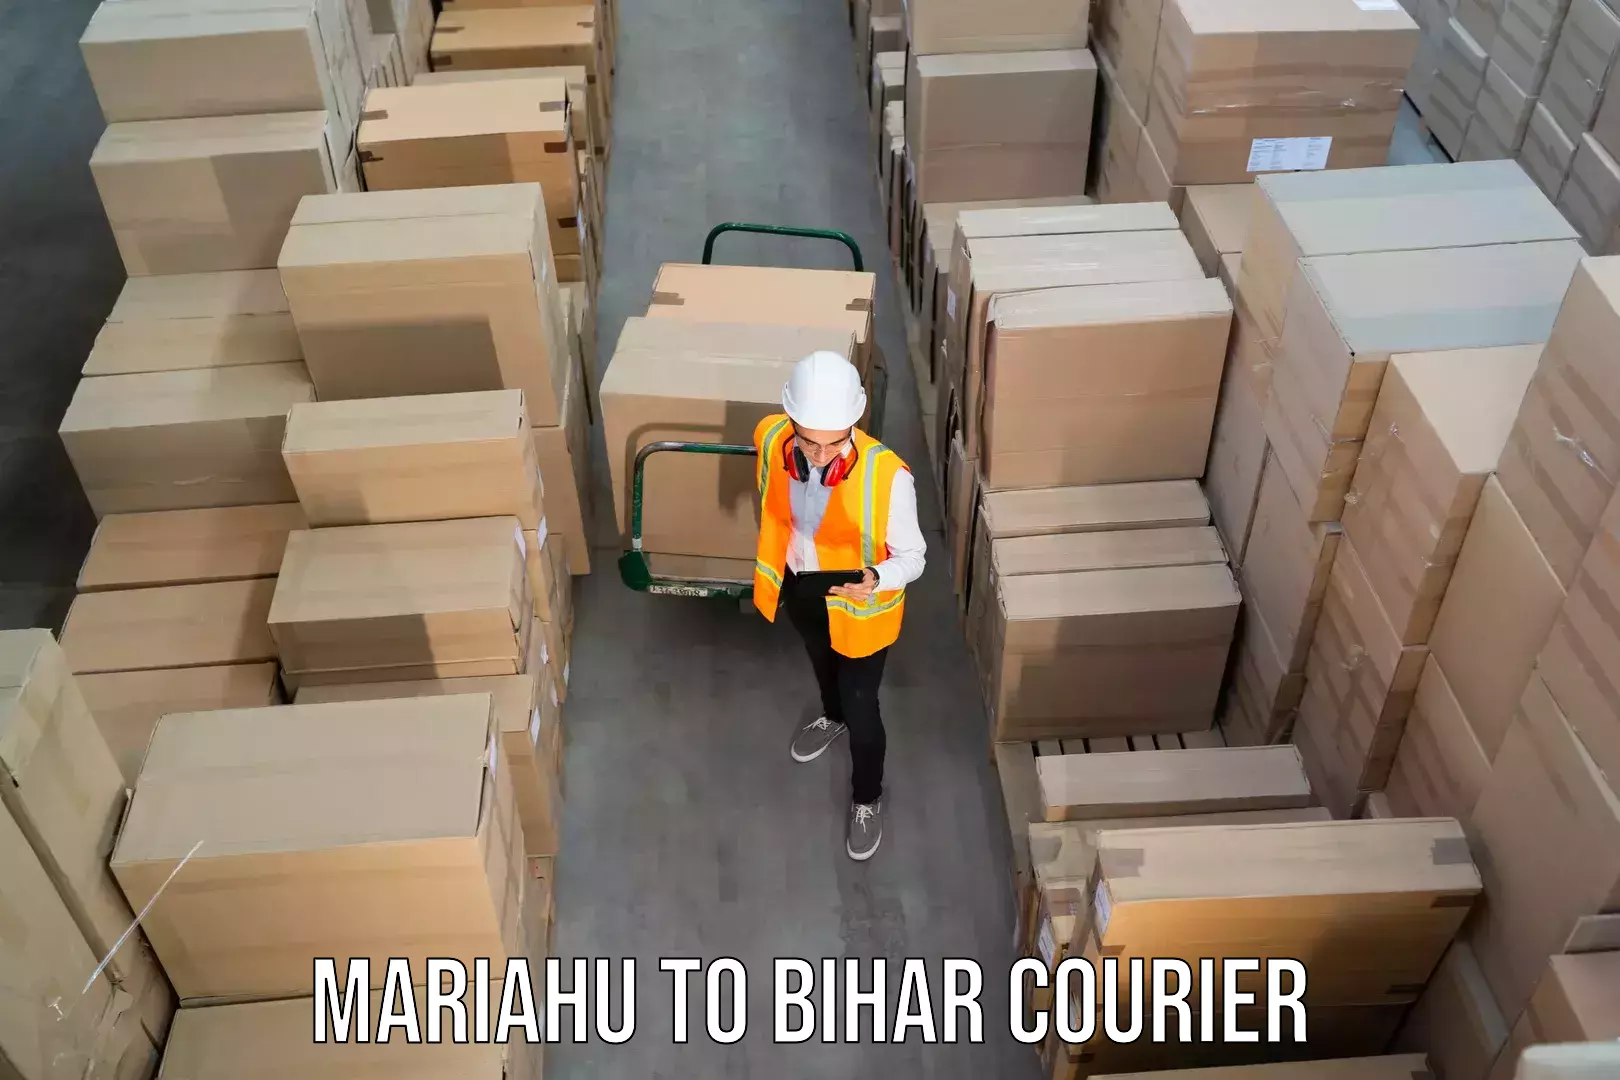 Doorstep delivery service Mariahu to Bihar